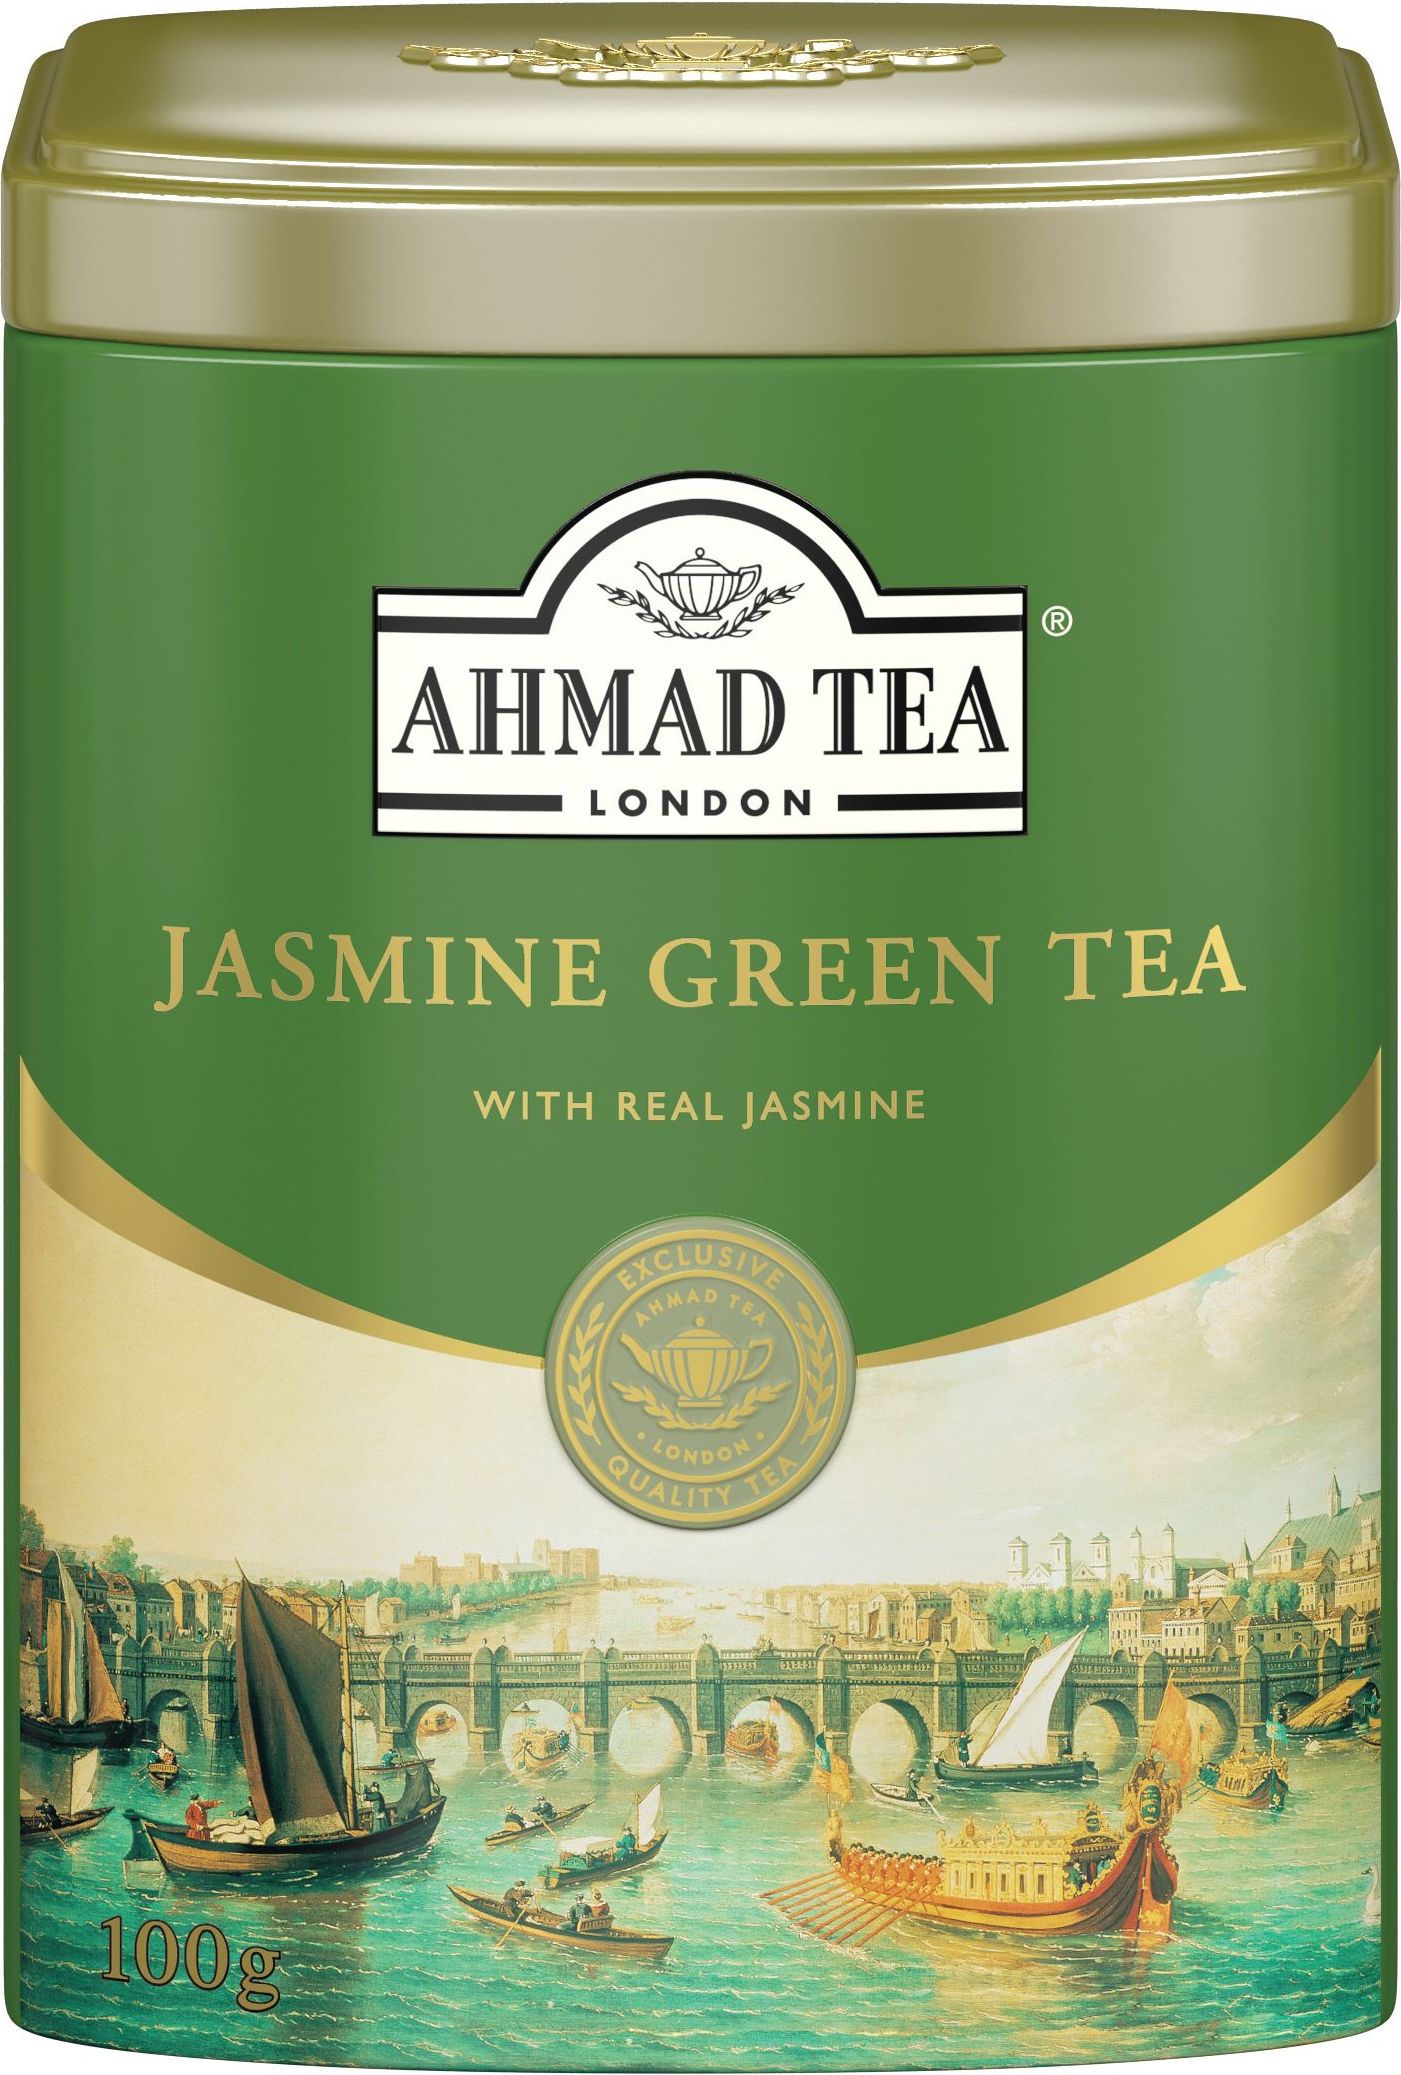 Зеленый чай в банке. Ahmad Tea Jasmine Green чай 100. Чай Ахмад зеленый с жасмином, листовой 100 гр. Чай Ahmad Tea Эрл грей 100г. Чай черный Ahmad Tea Ahmad Tea зеленый с жасмином ж/б, 100 г.